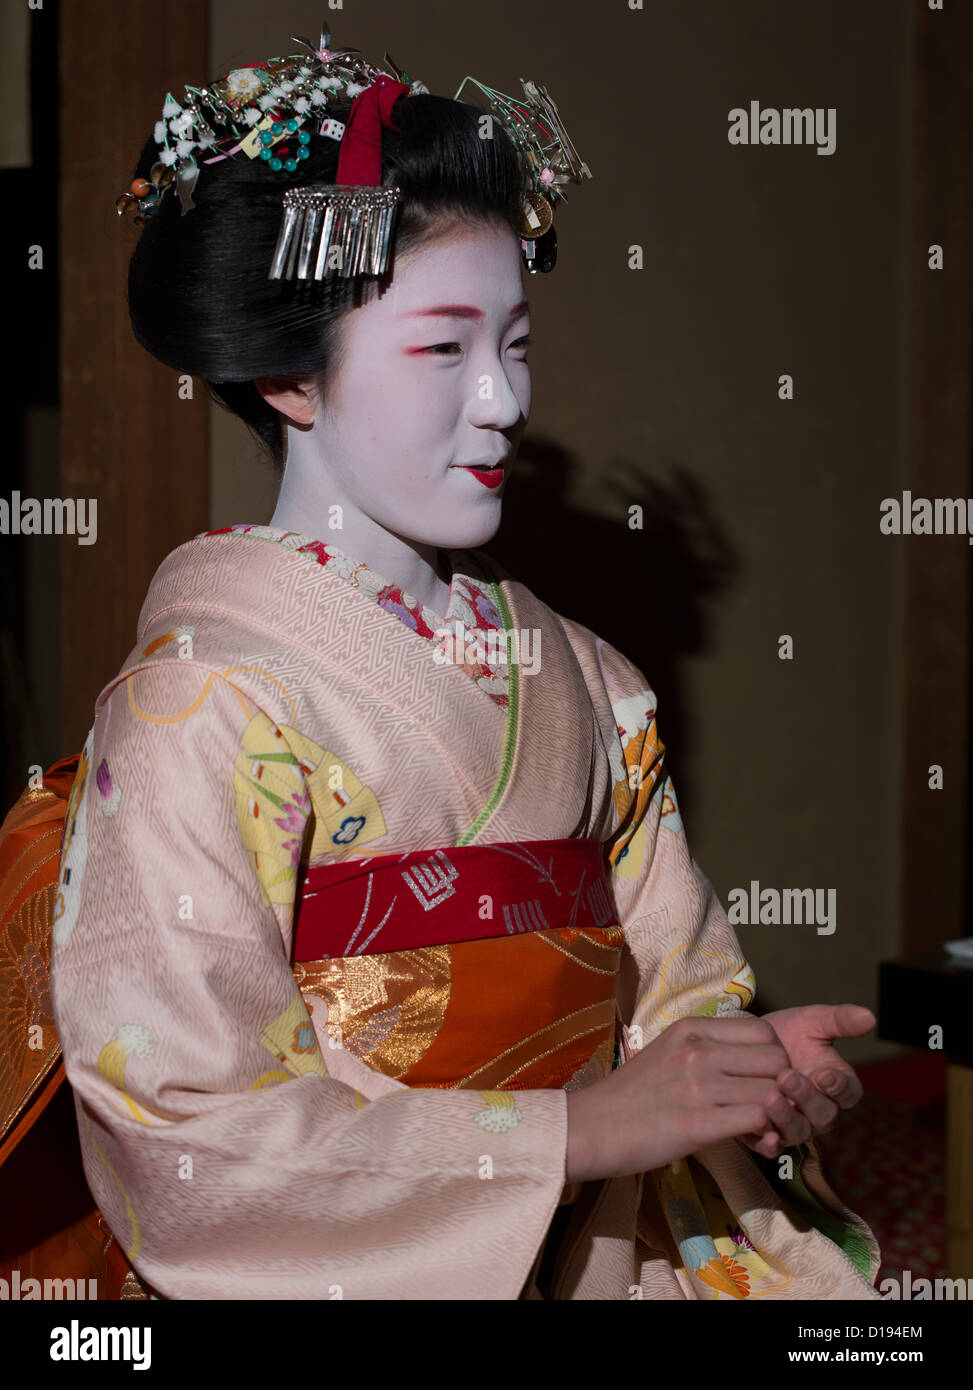 Eriha bei 17 jährigen Maiko (Lehrling Geisha) Gäste in einem Teehaus Gion in Kyōto, Japan Stockfoto